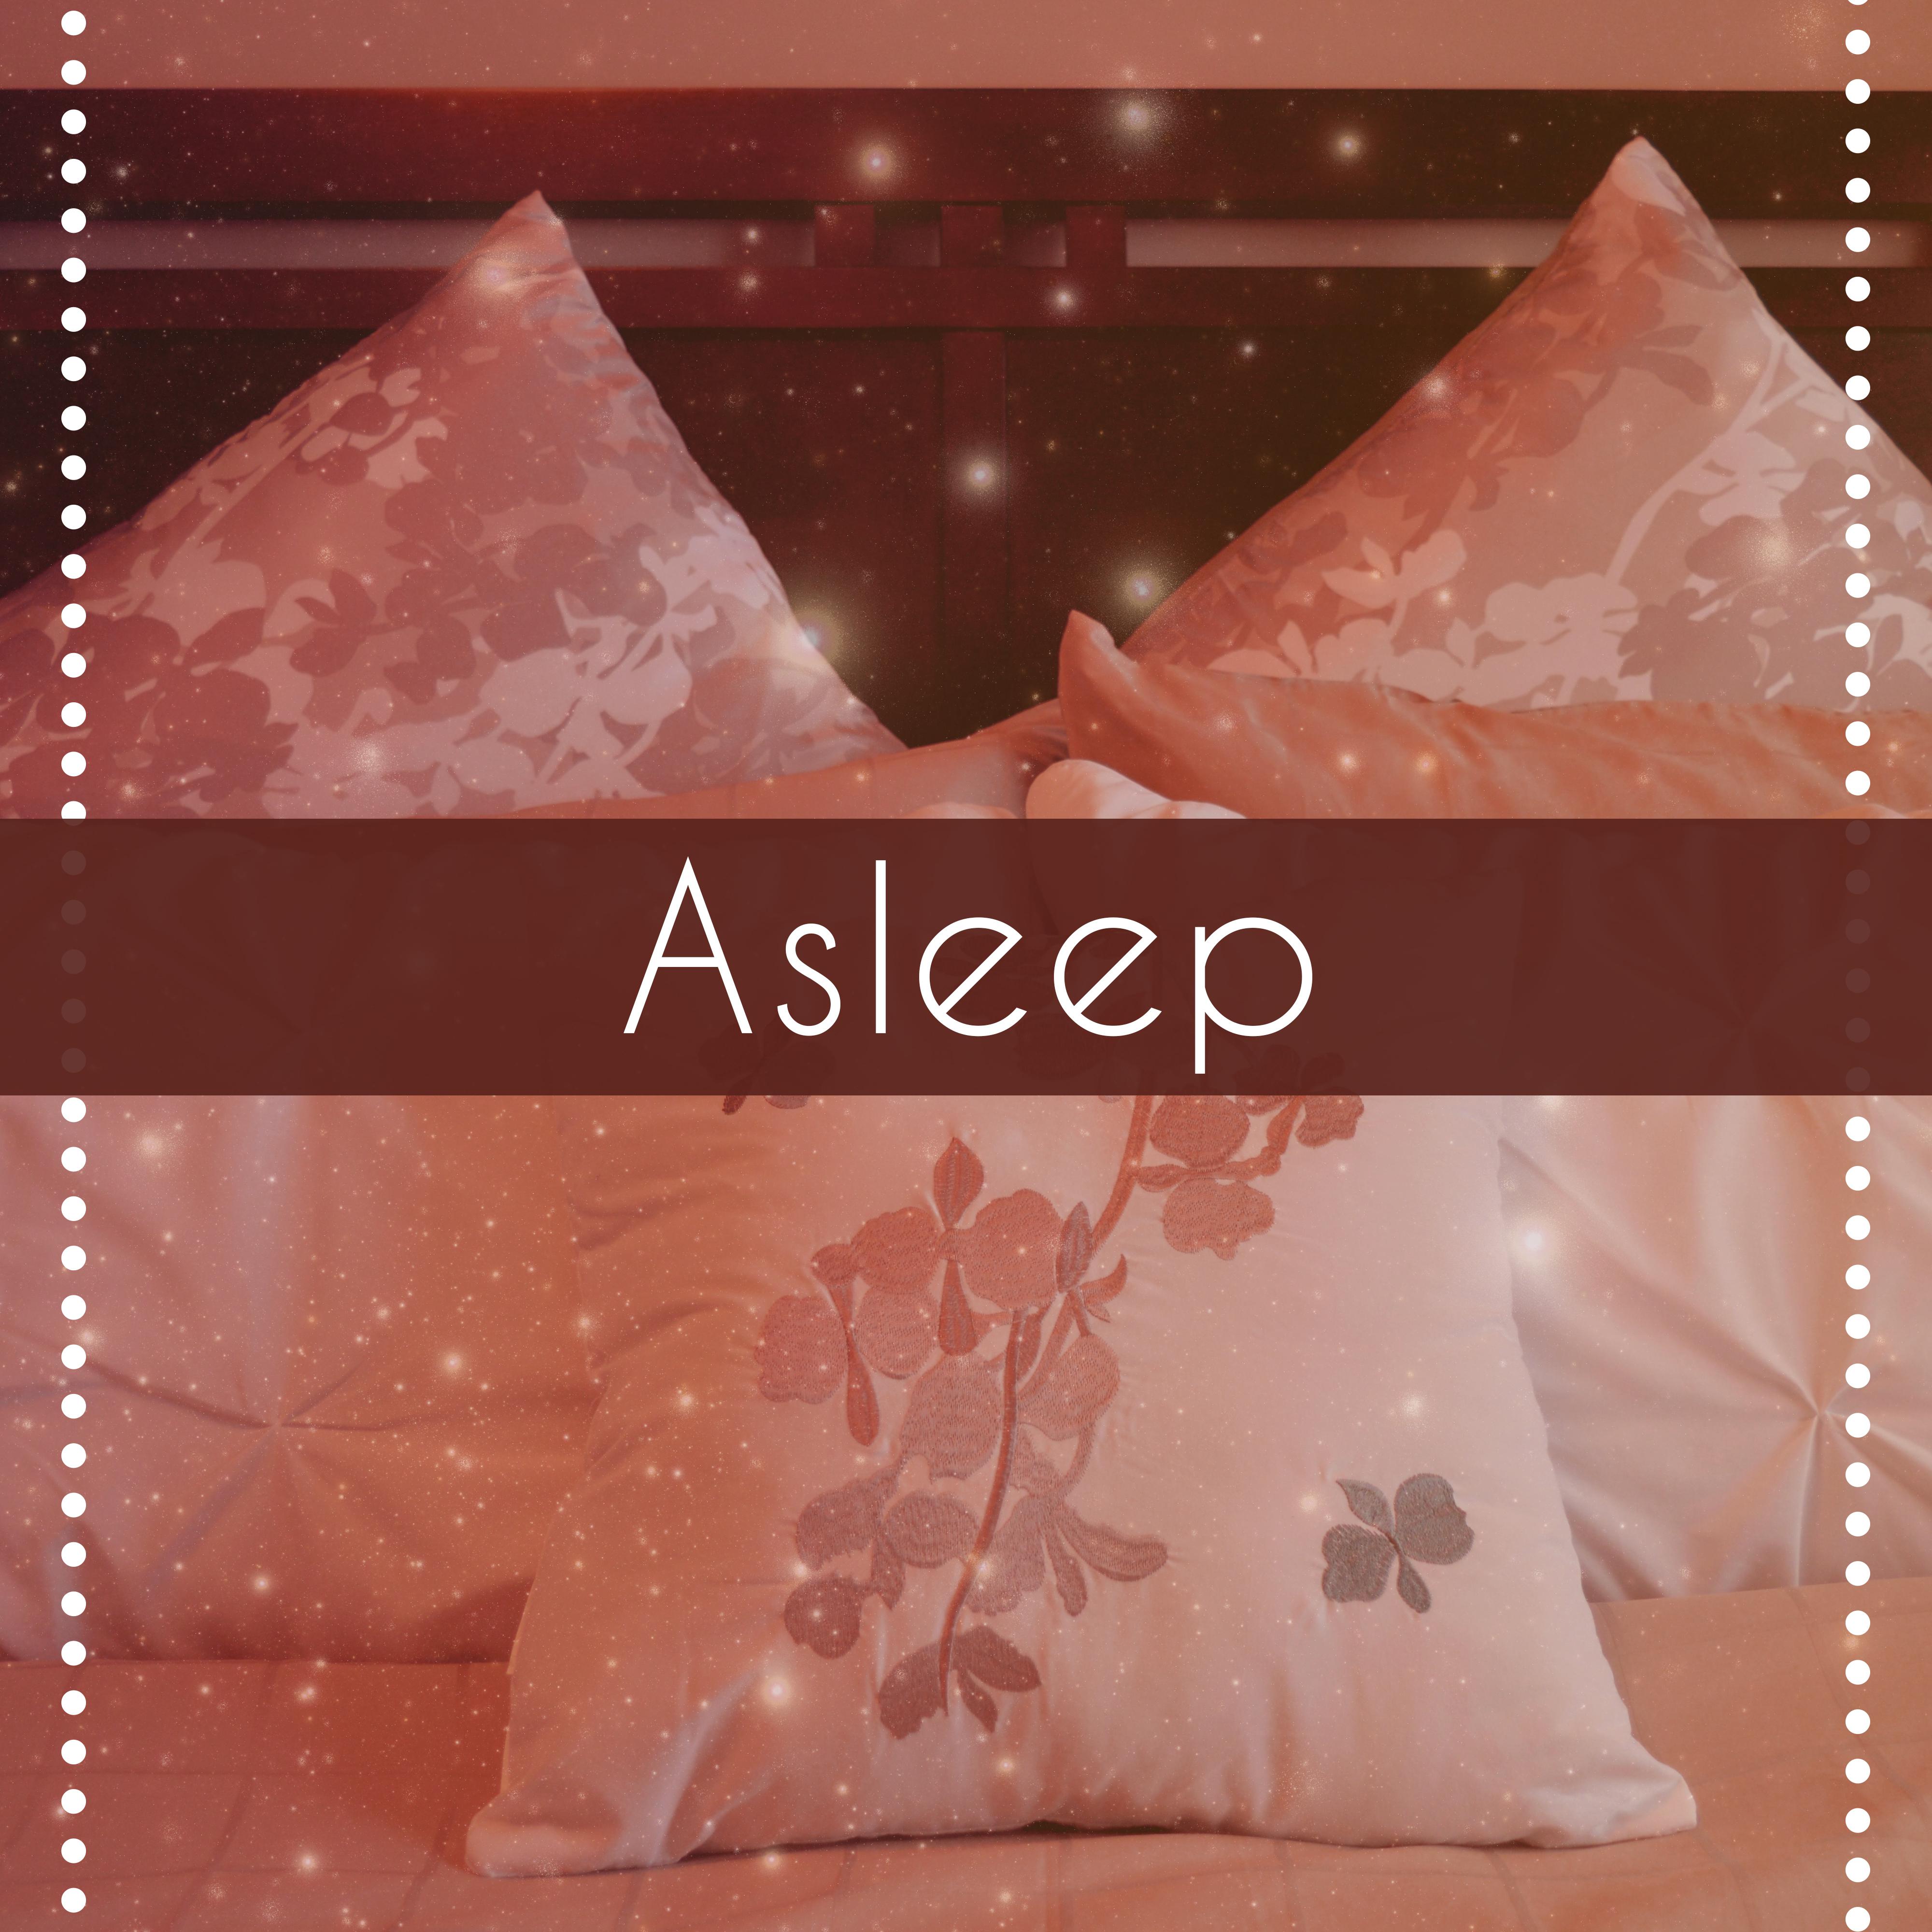 Asleep – Relaxing Music for Falling Asleep, Sleep Music, Deep Sleep, Lullabies for Adult and Children